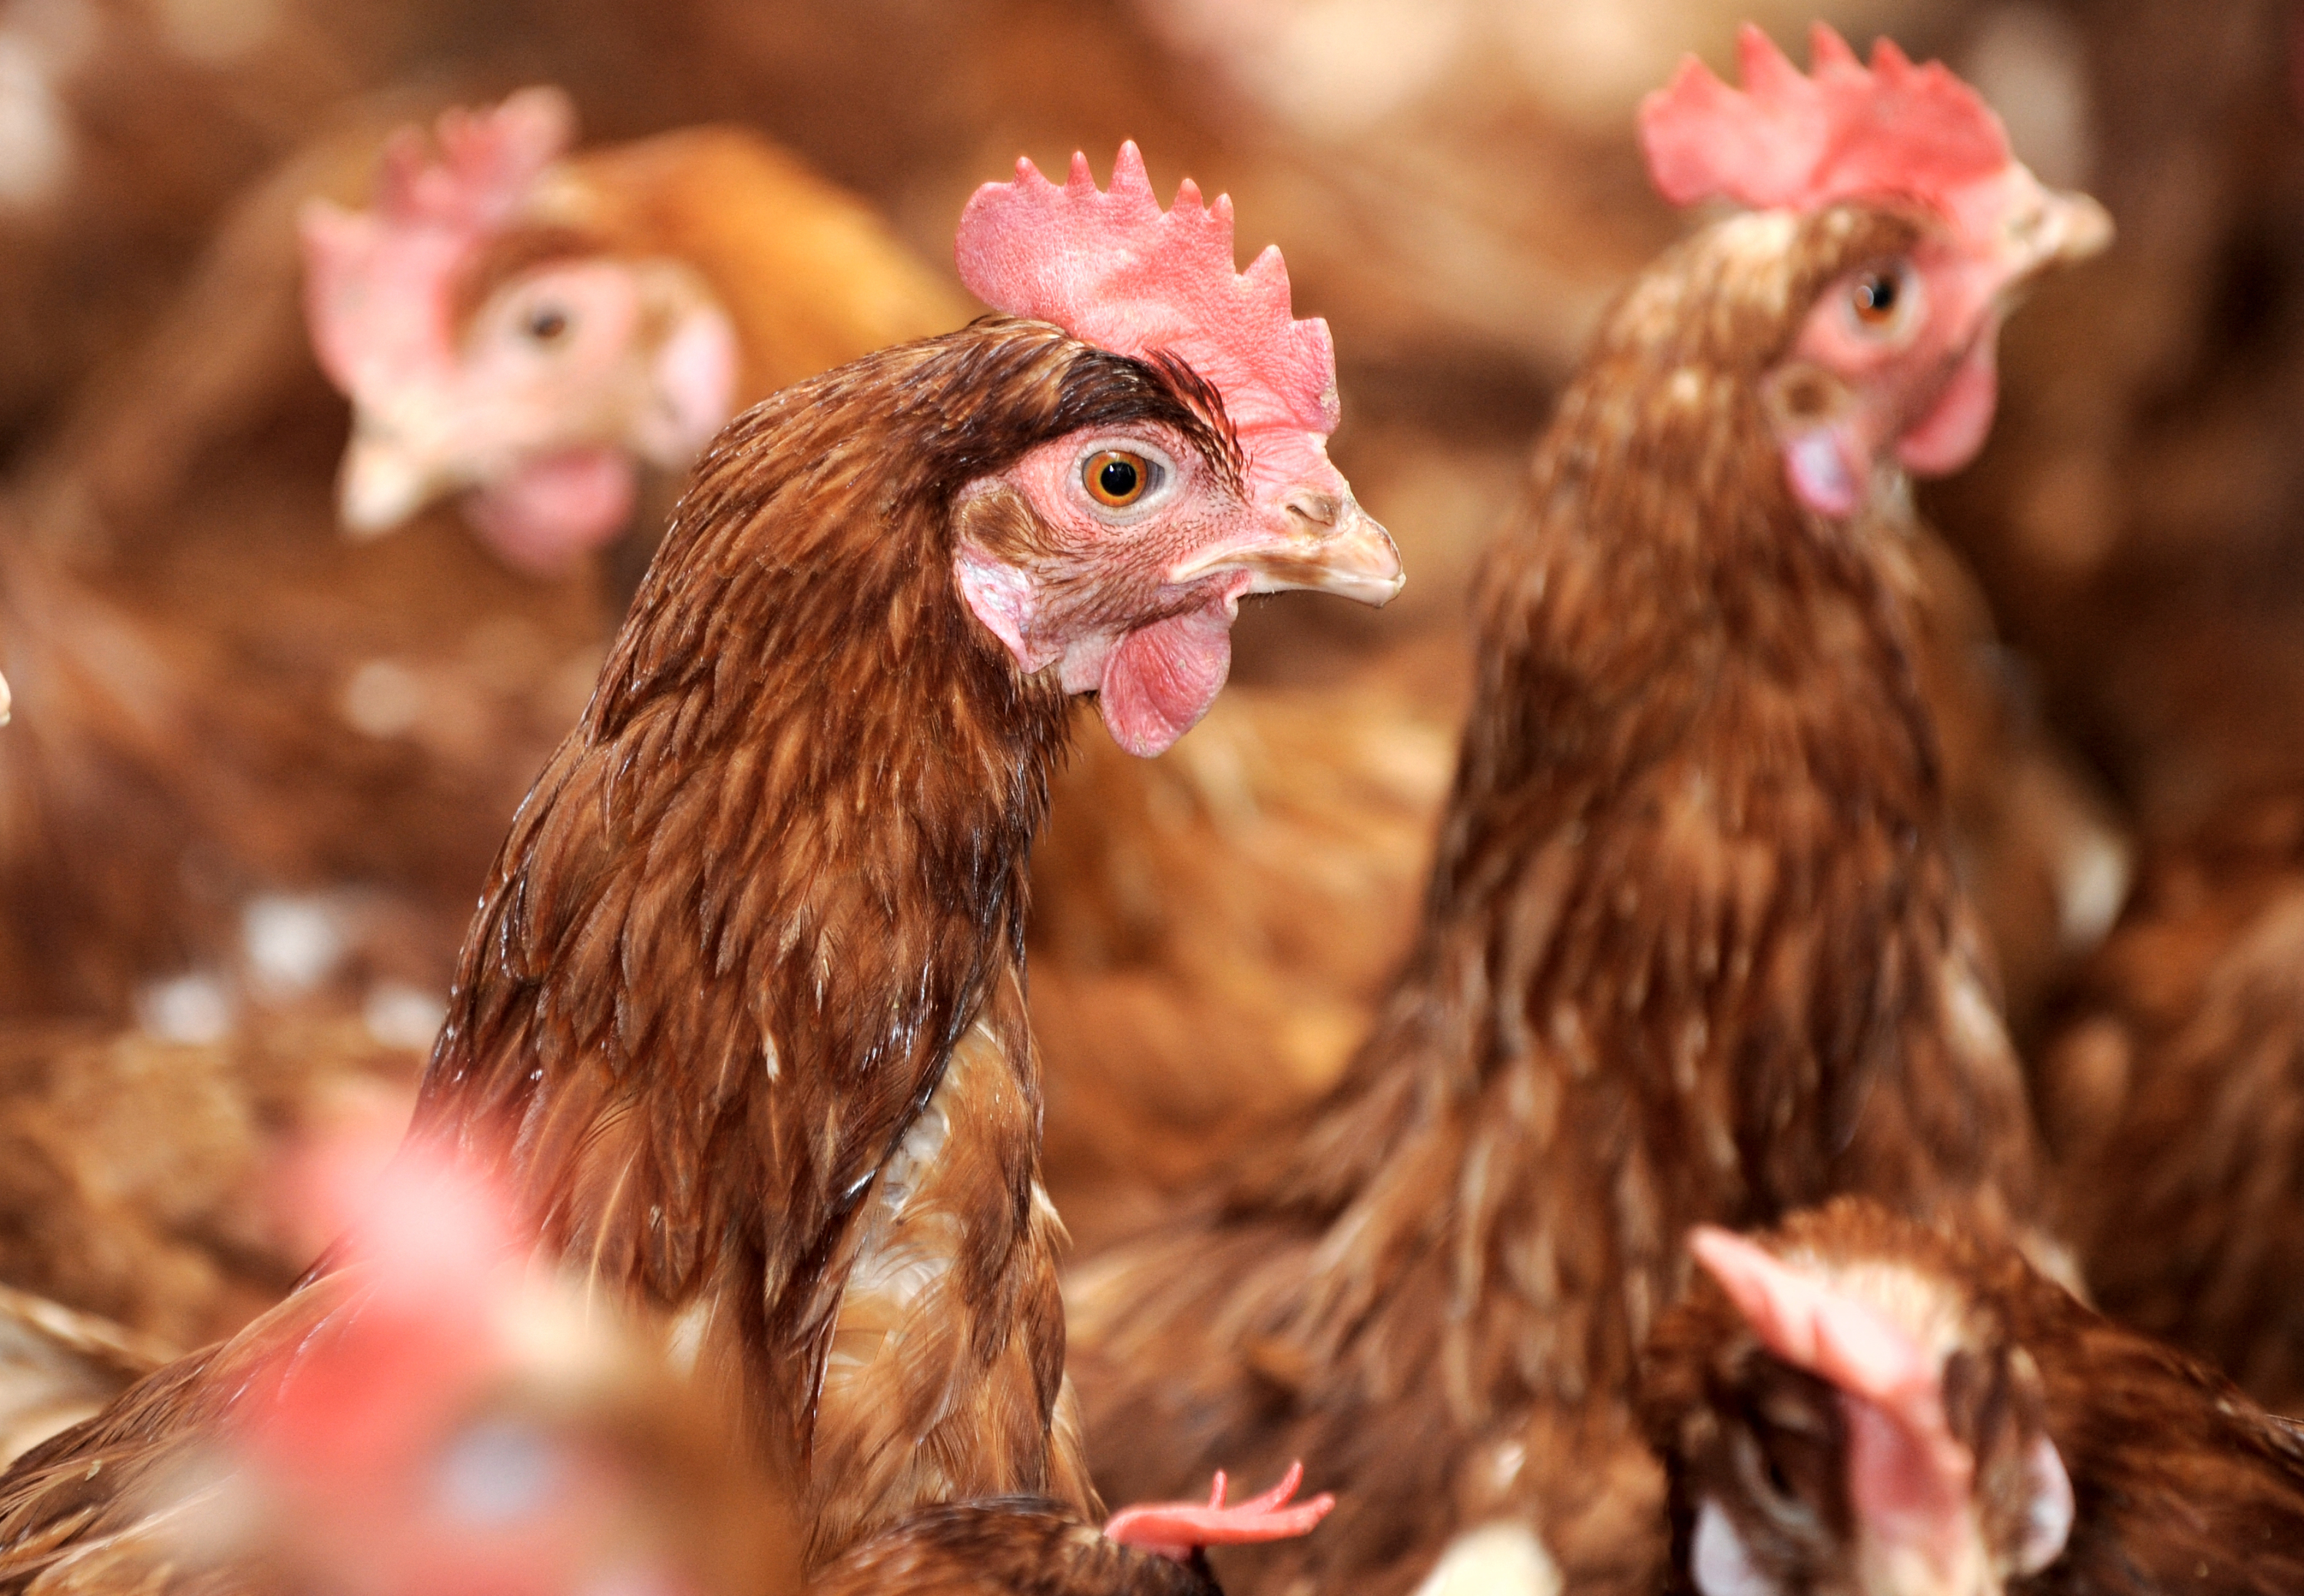 Deux-Sèvres : L214 dénonce des «violences» dans un élevage de poules, le groupe réfute